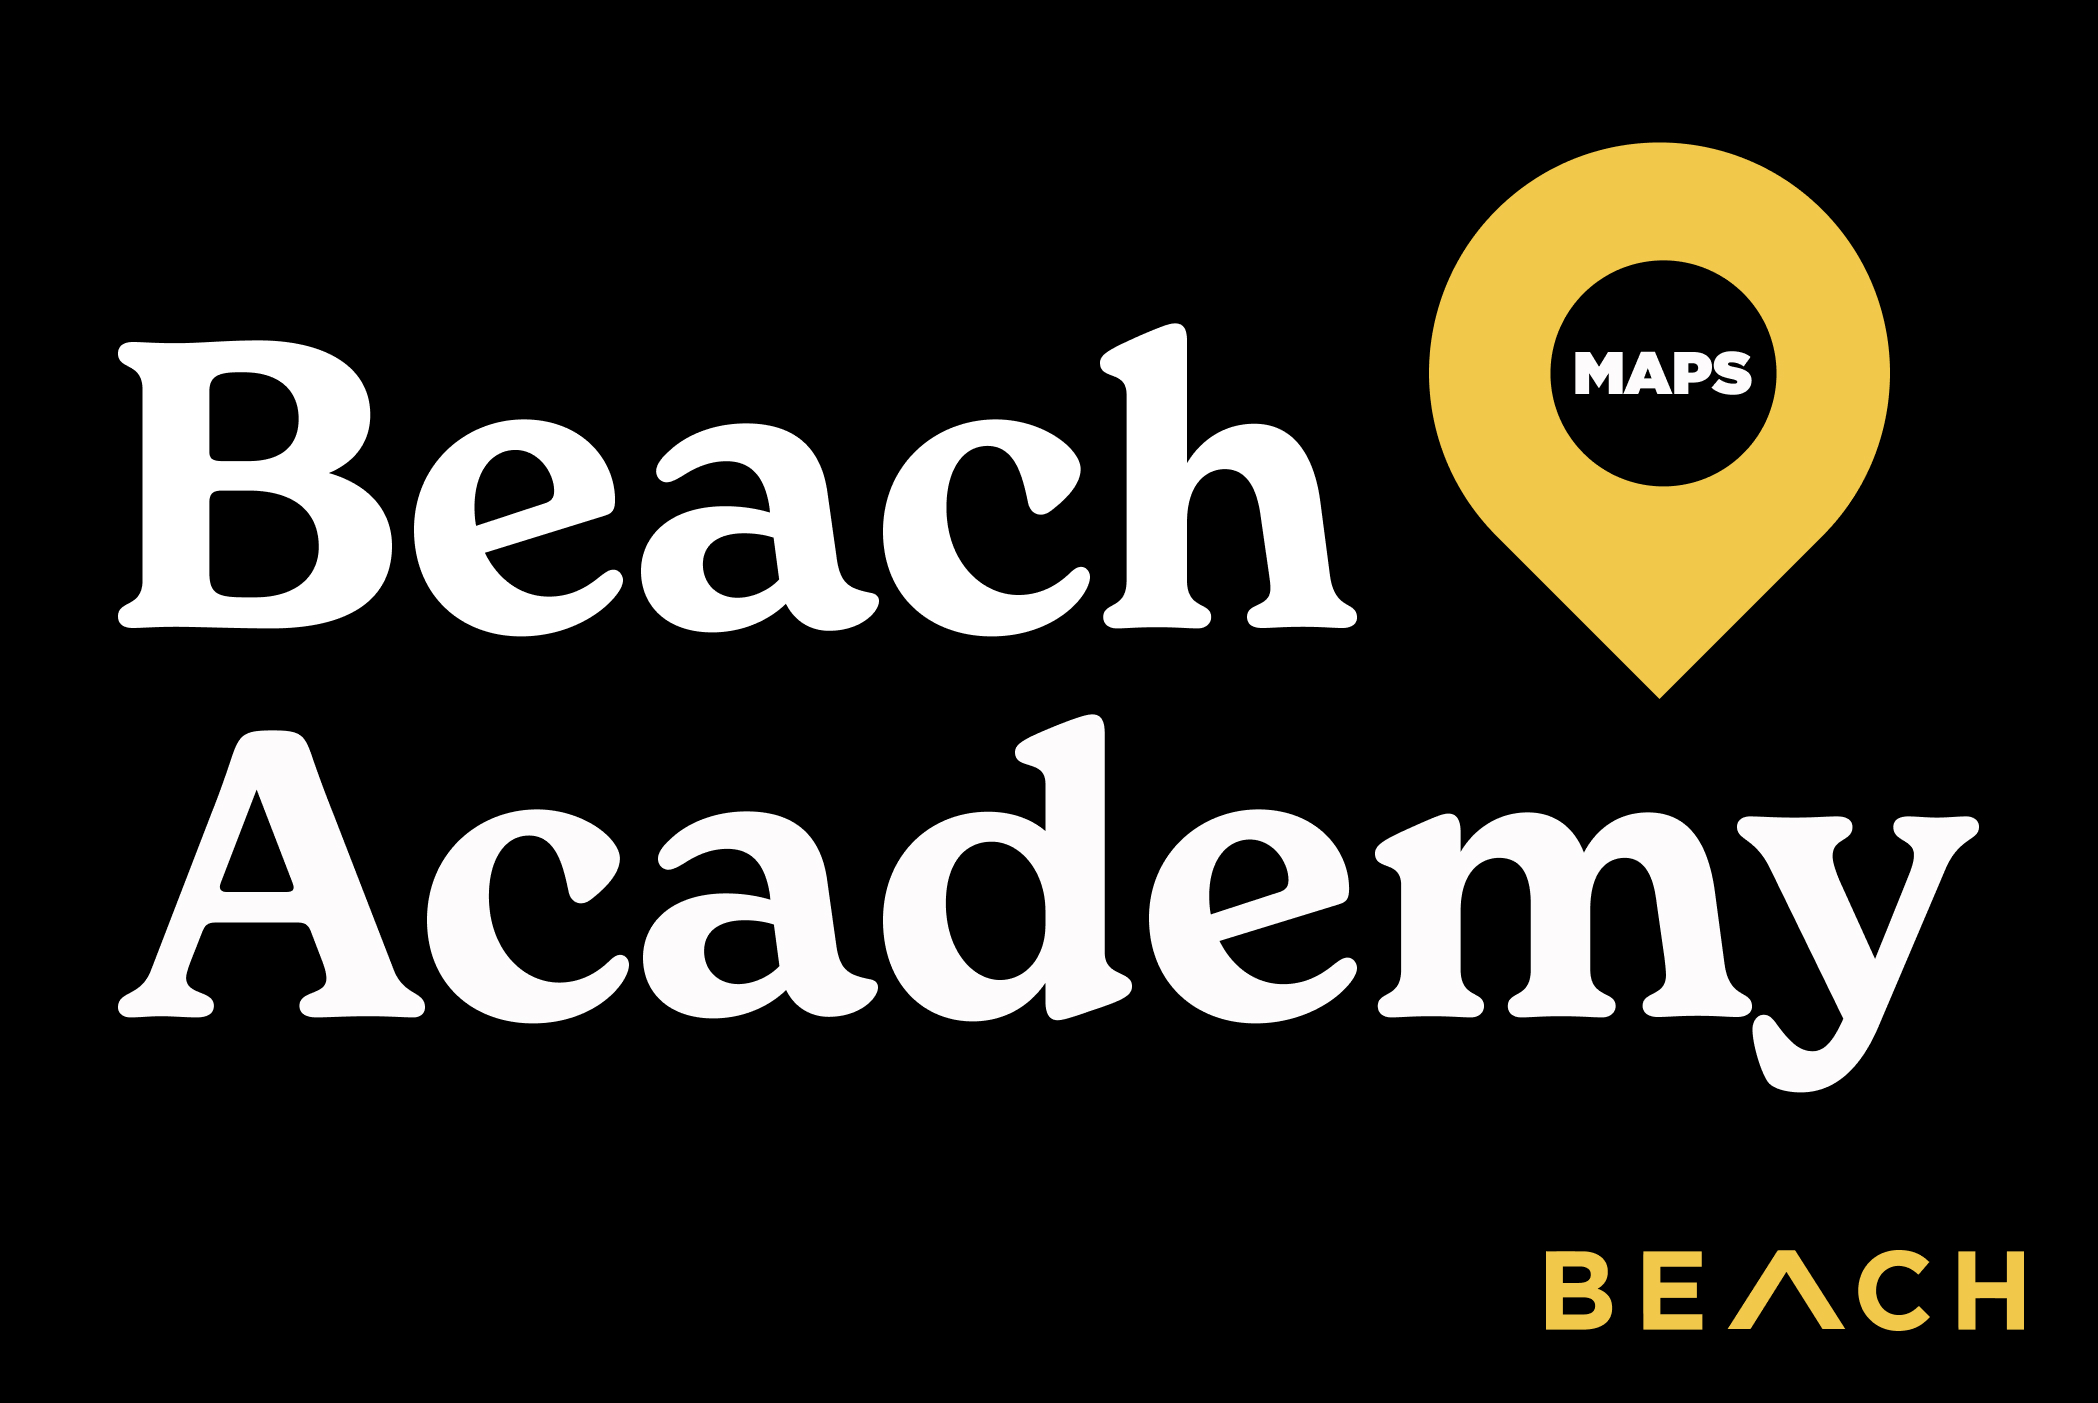 Beach Academy, a MAPS Program, at the Beach